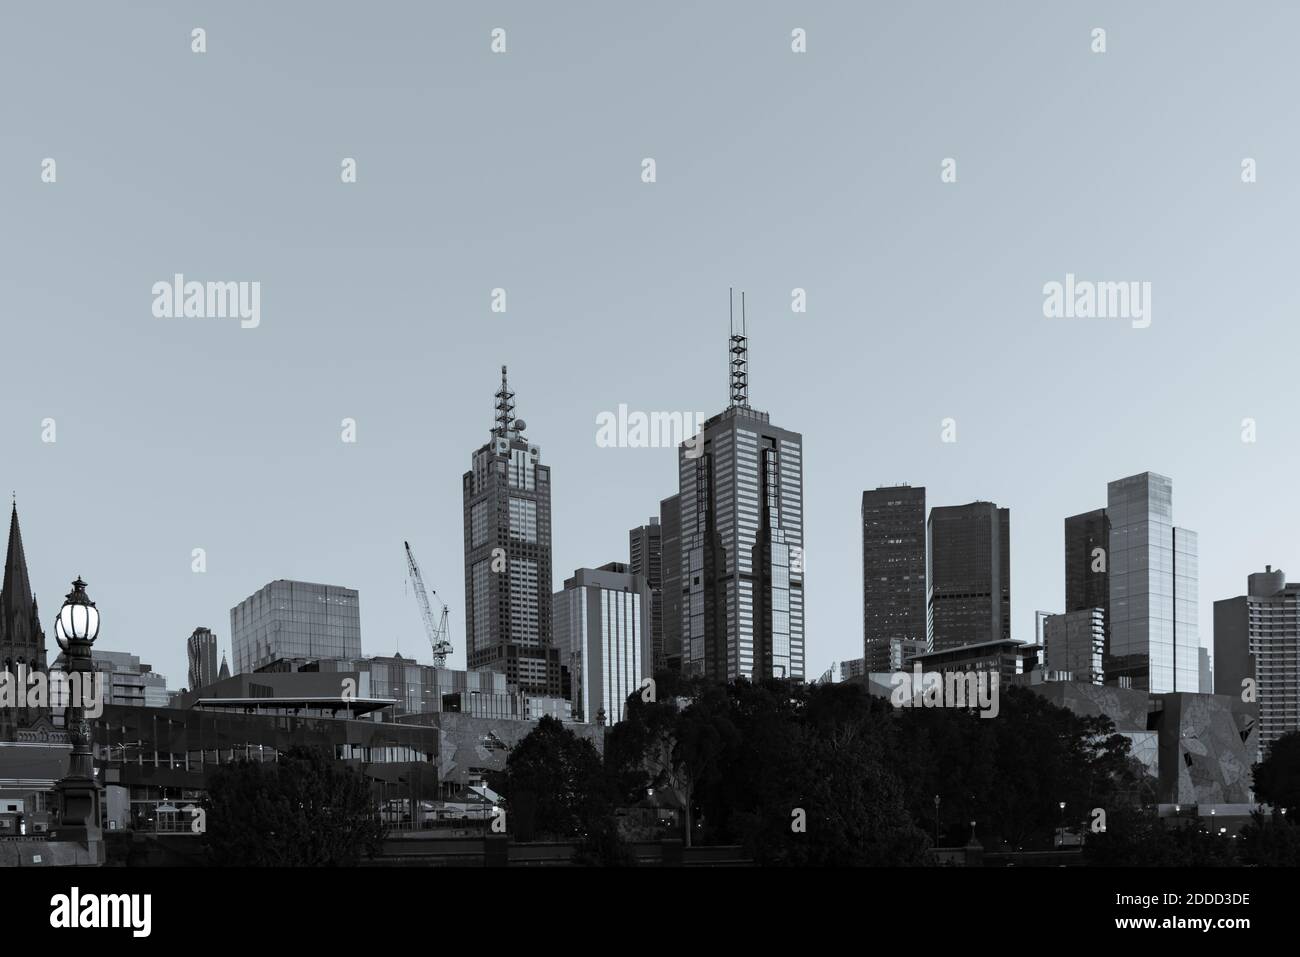 Die kommerzielle Skyline von Melbourne mit Wolkenkratzern, die sich in monochromen Blautönen über den unteren Gebäuden erheben. Stockfoto